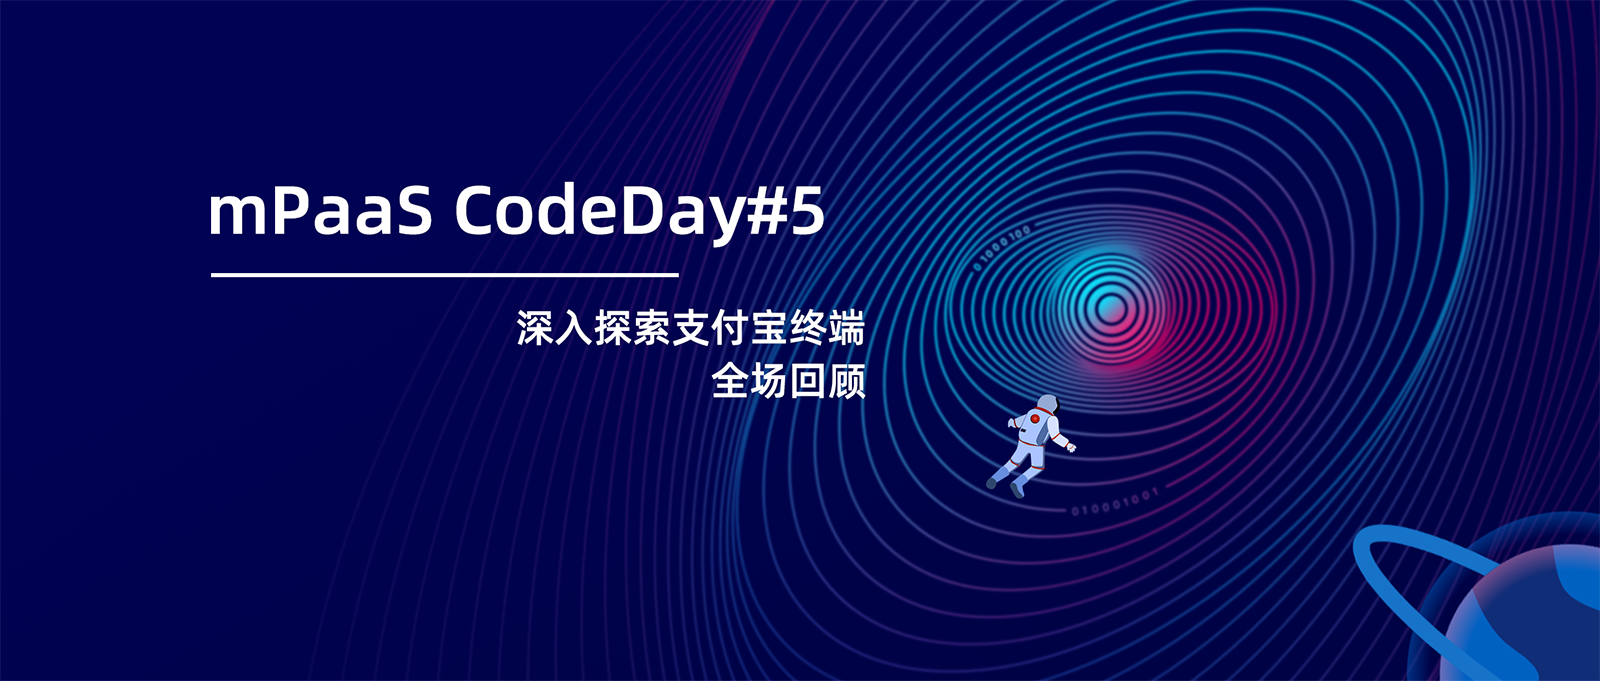 CodeDay#5 全程回顾——一场关于动态化开发实践的技术探讨